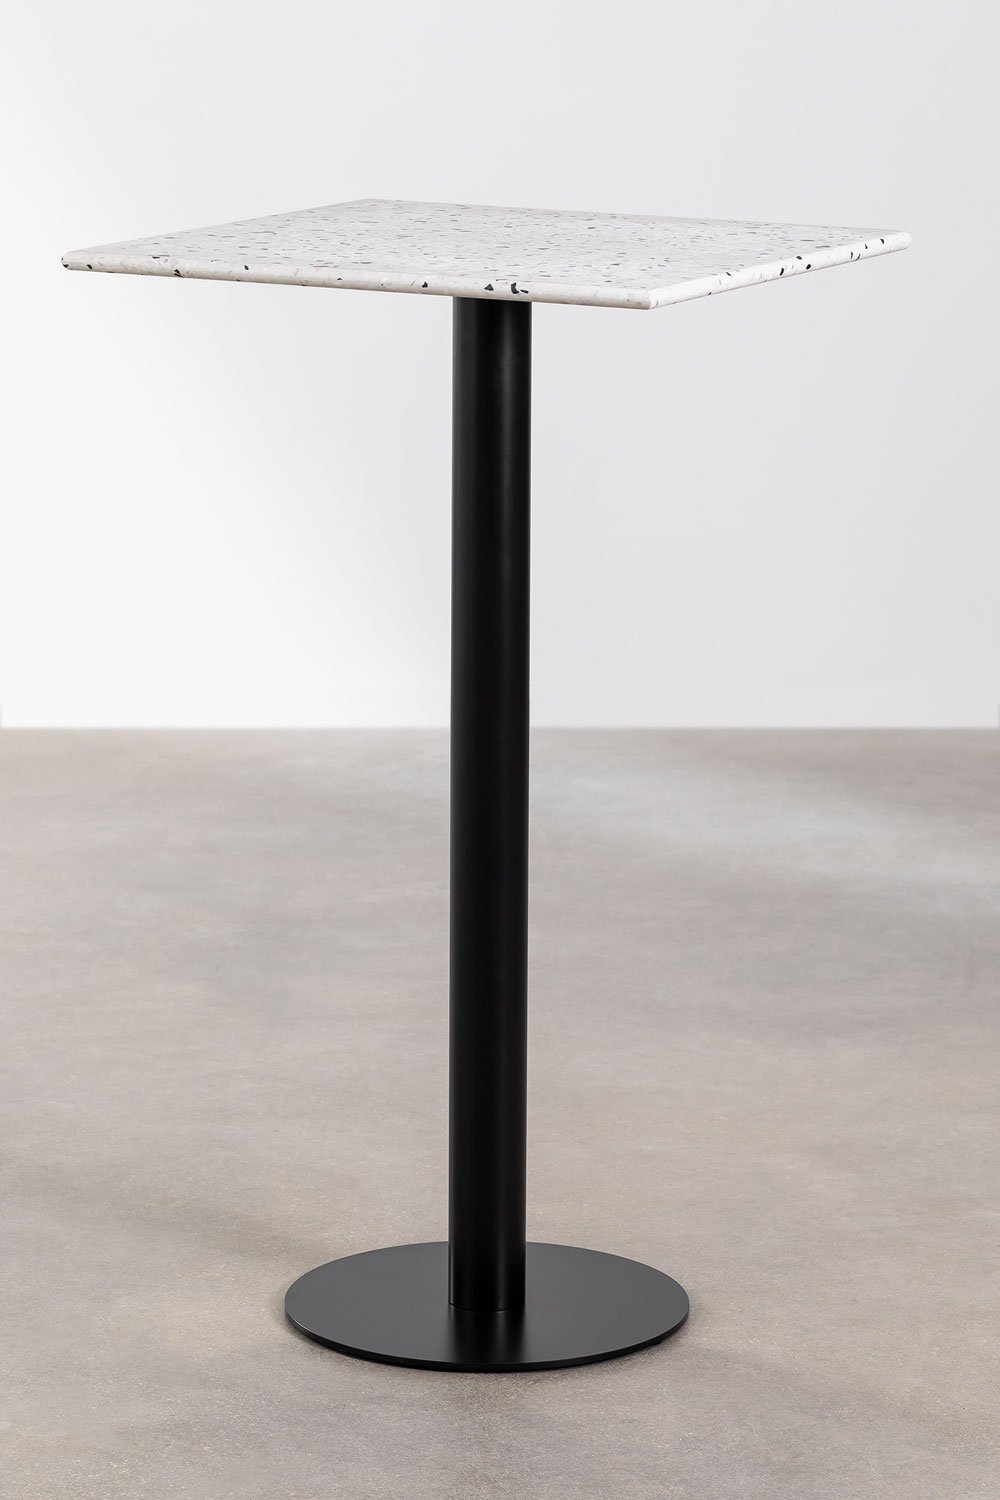 Tavolo Alto Quadrato con effetto Terrazzo (60x60 cm) Dolce, immagine della galleria 1